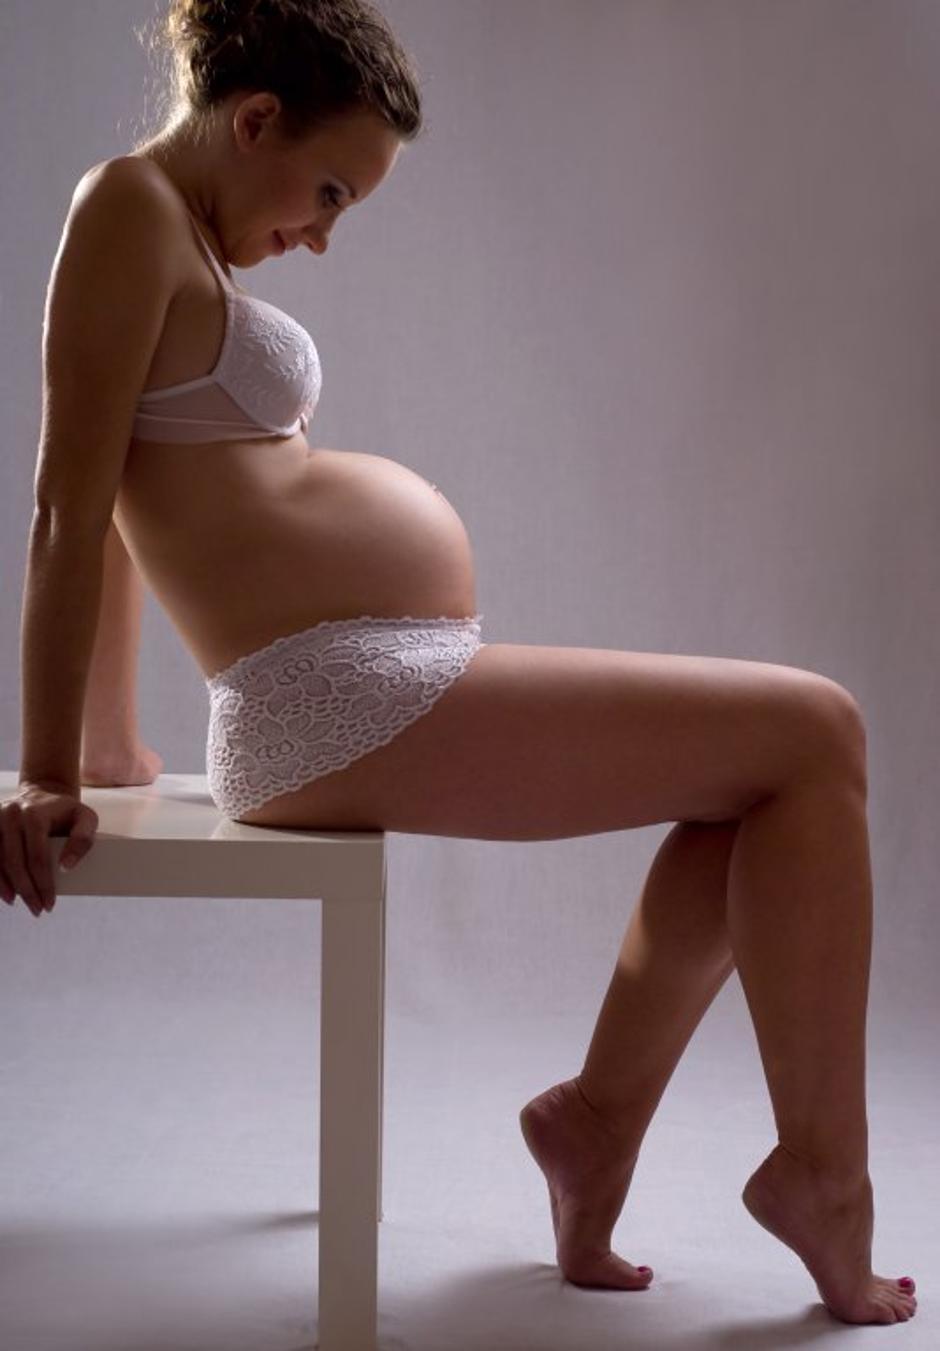 nosečnica | Avtor: Shutterstock